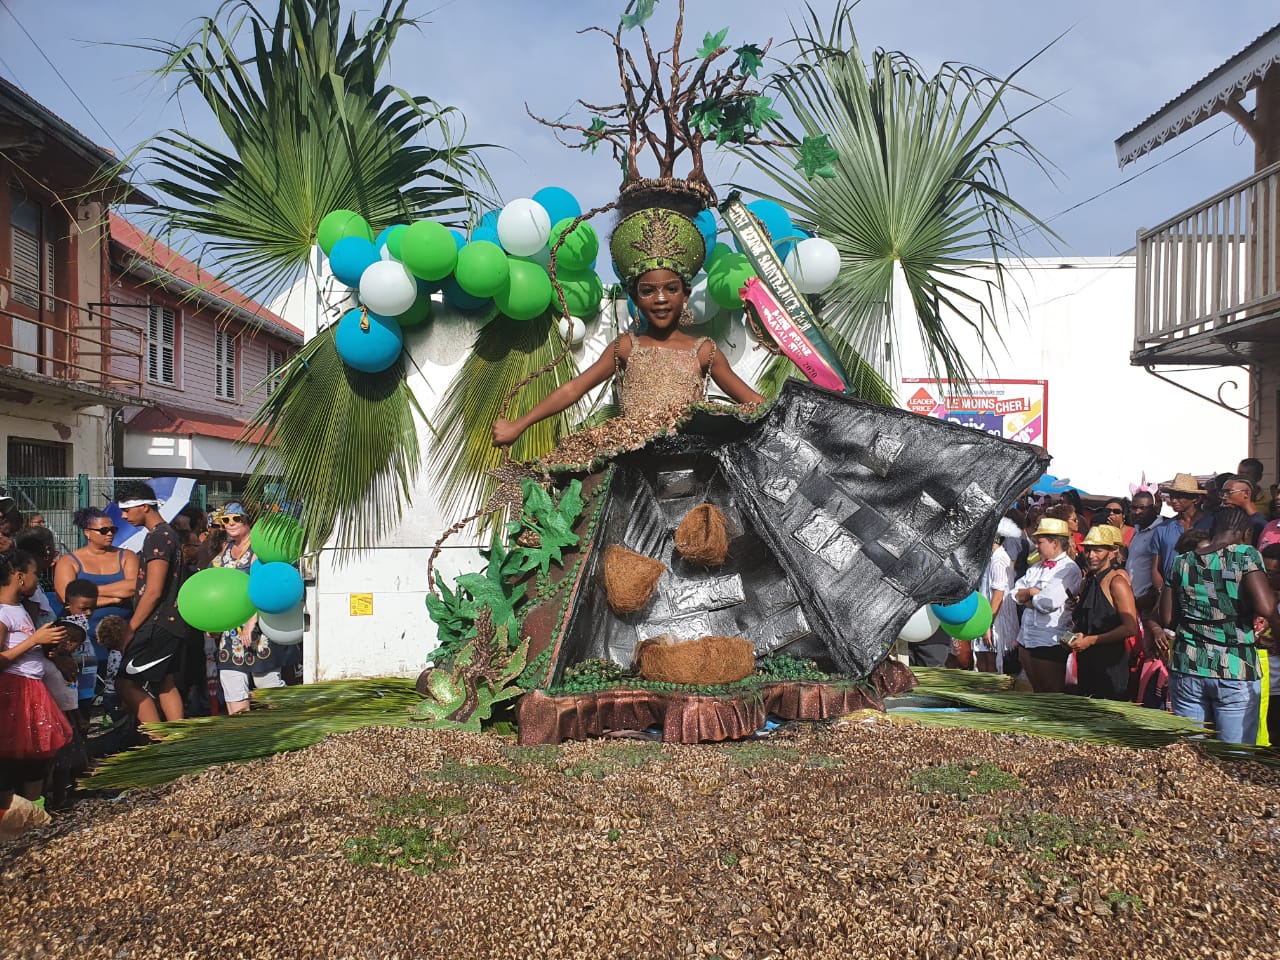     Un carnaval 2.0 pour les communes du sud de la Martinique ?

